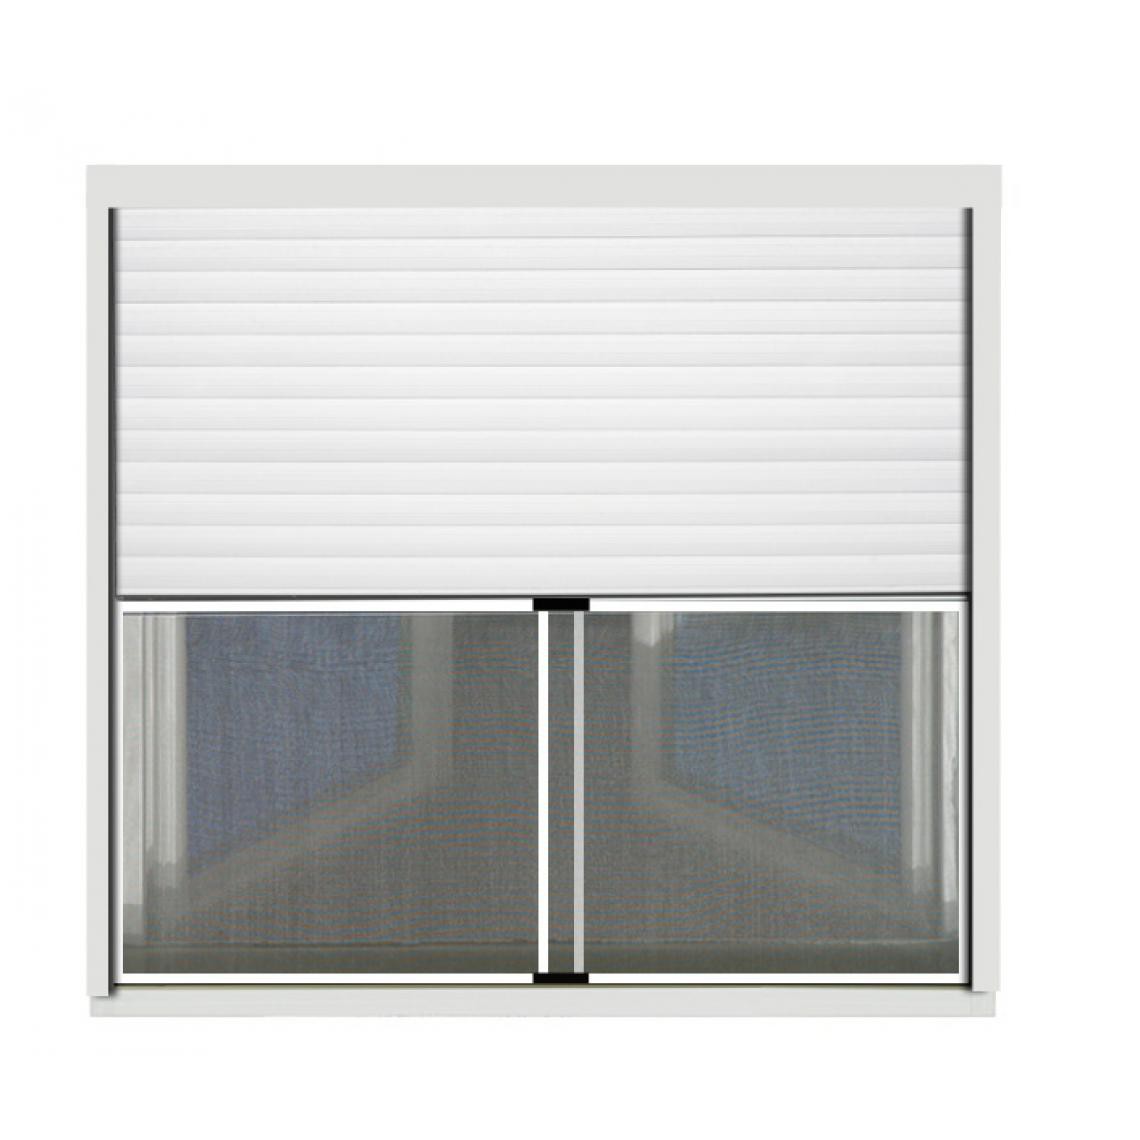 Confortex - Extensible screen 75x100 cm Blanc - Moustiquaire Fenêtre